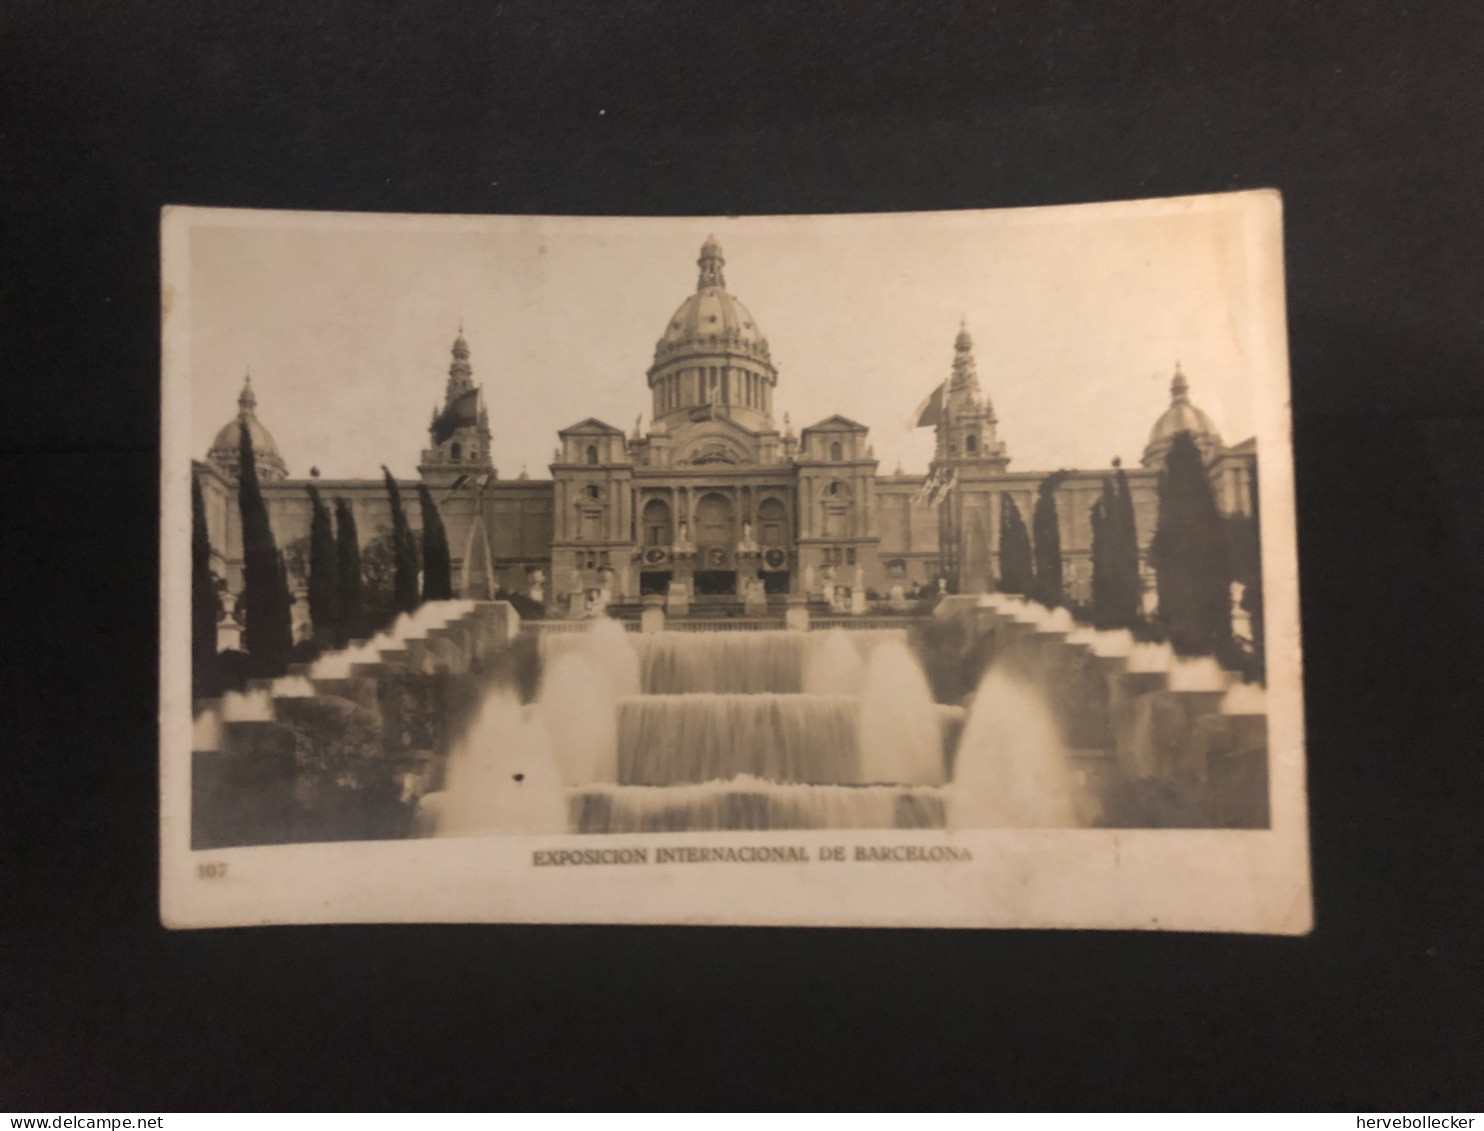 Exposition Internacional De Barcelona 1930 - Barcelona